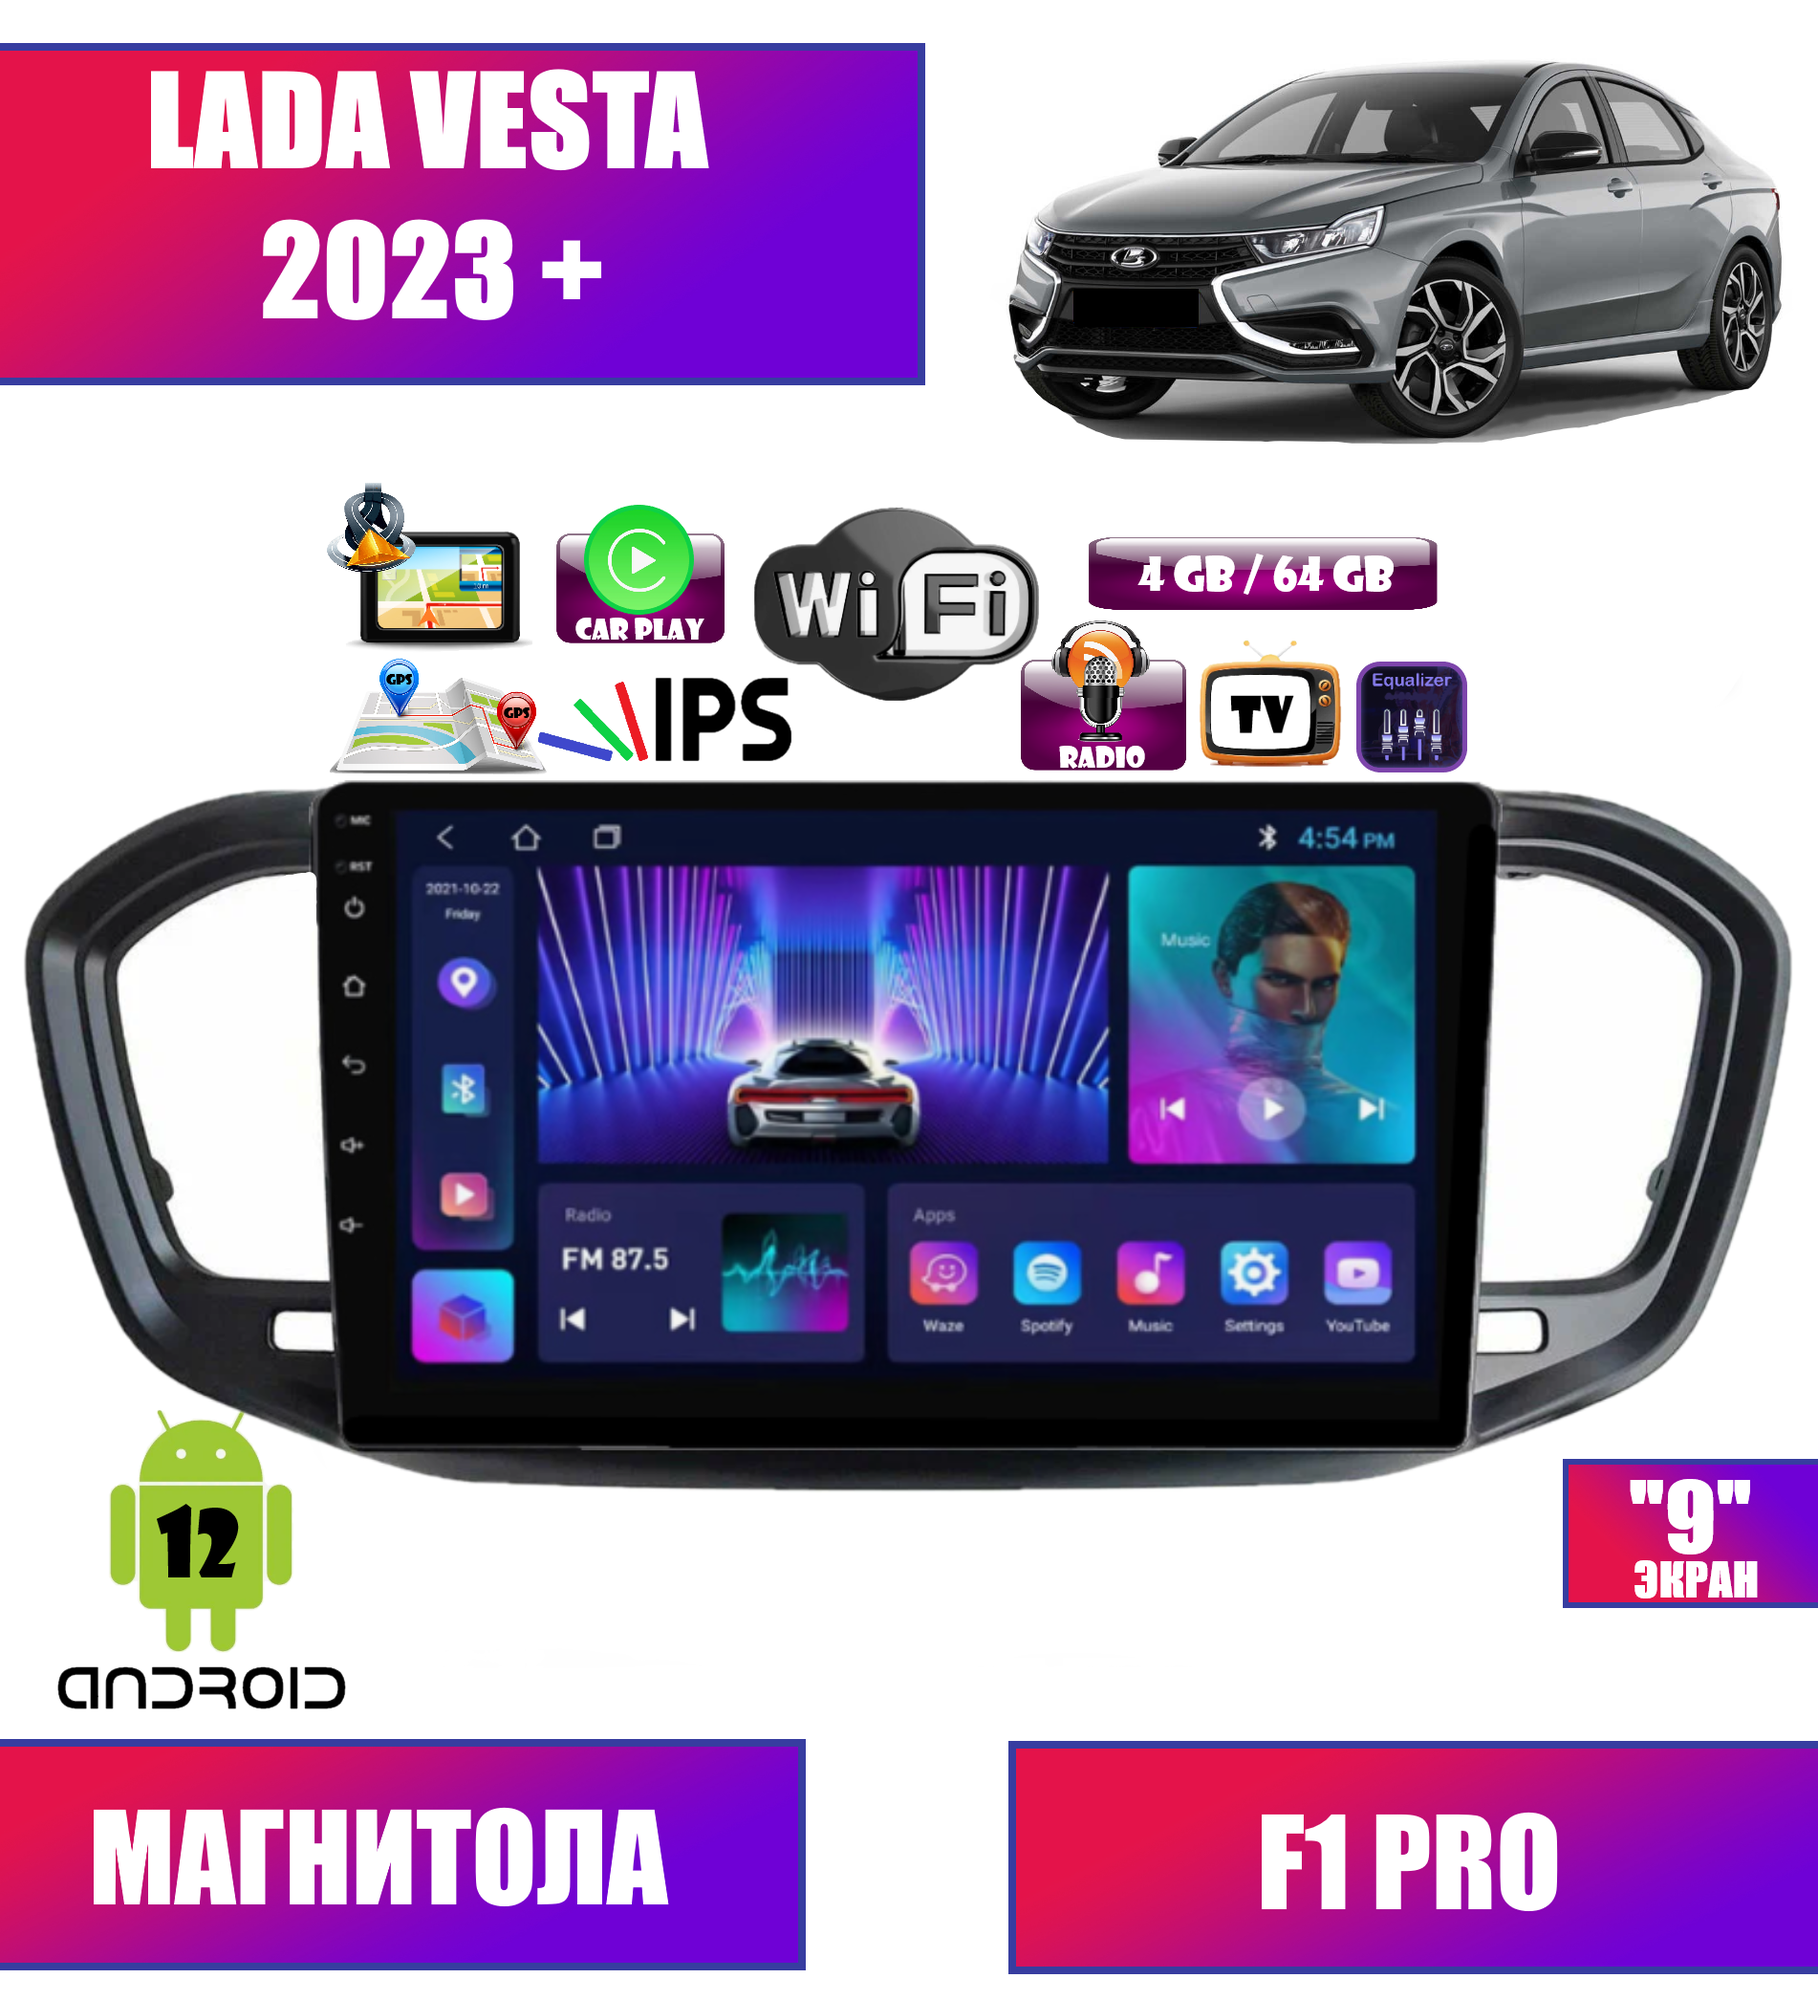 Автомагнитола для Lada Vesta 2023 +, Android 12, 4/64Gb, CarPlay, Wi-Fi, Bluetooth, GPS, IPS экран, сенсорные кнопки, поддержка кнопок на руле